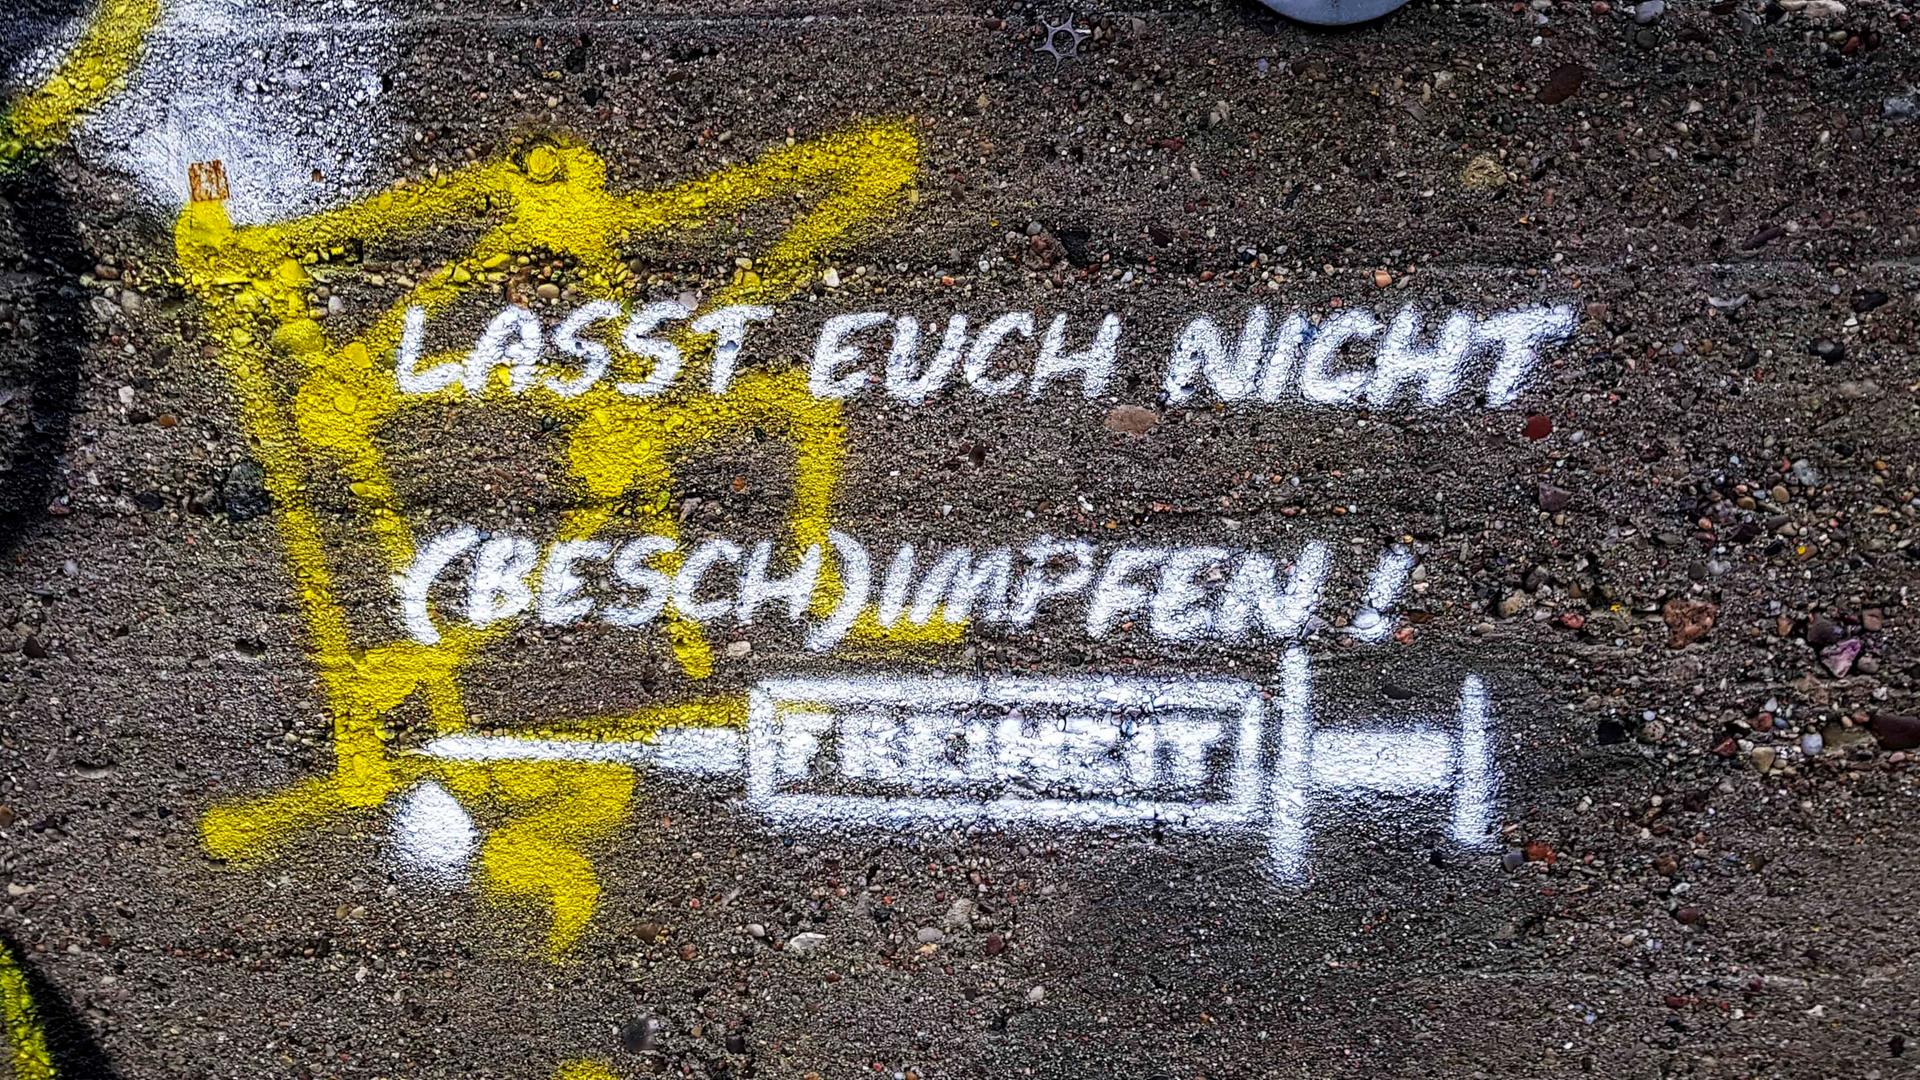 "Lasst euch nicht (besch)impfen", lautert das Graffiti auf einer Hauswand in Hamburg.